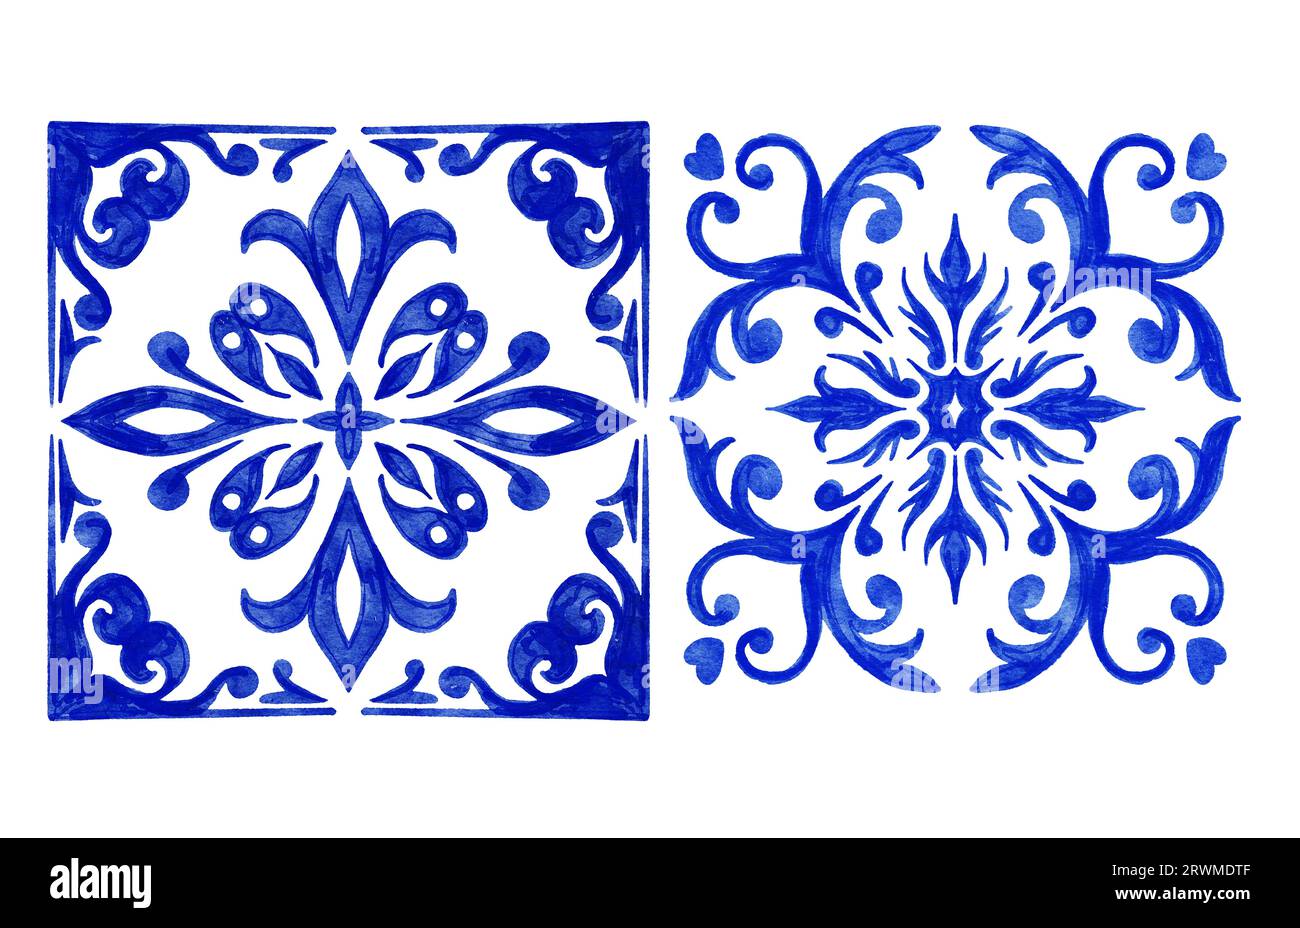 Handgezeichnete Aquarellzeichnung mit blauen weißen azulejo portugiesischen Keramikfliesen. Ethnische portugal geomentrische Indigo wiederholte Wandbodendekoration. Arabischer ornamentaler Hintergrund Stockfoto